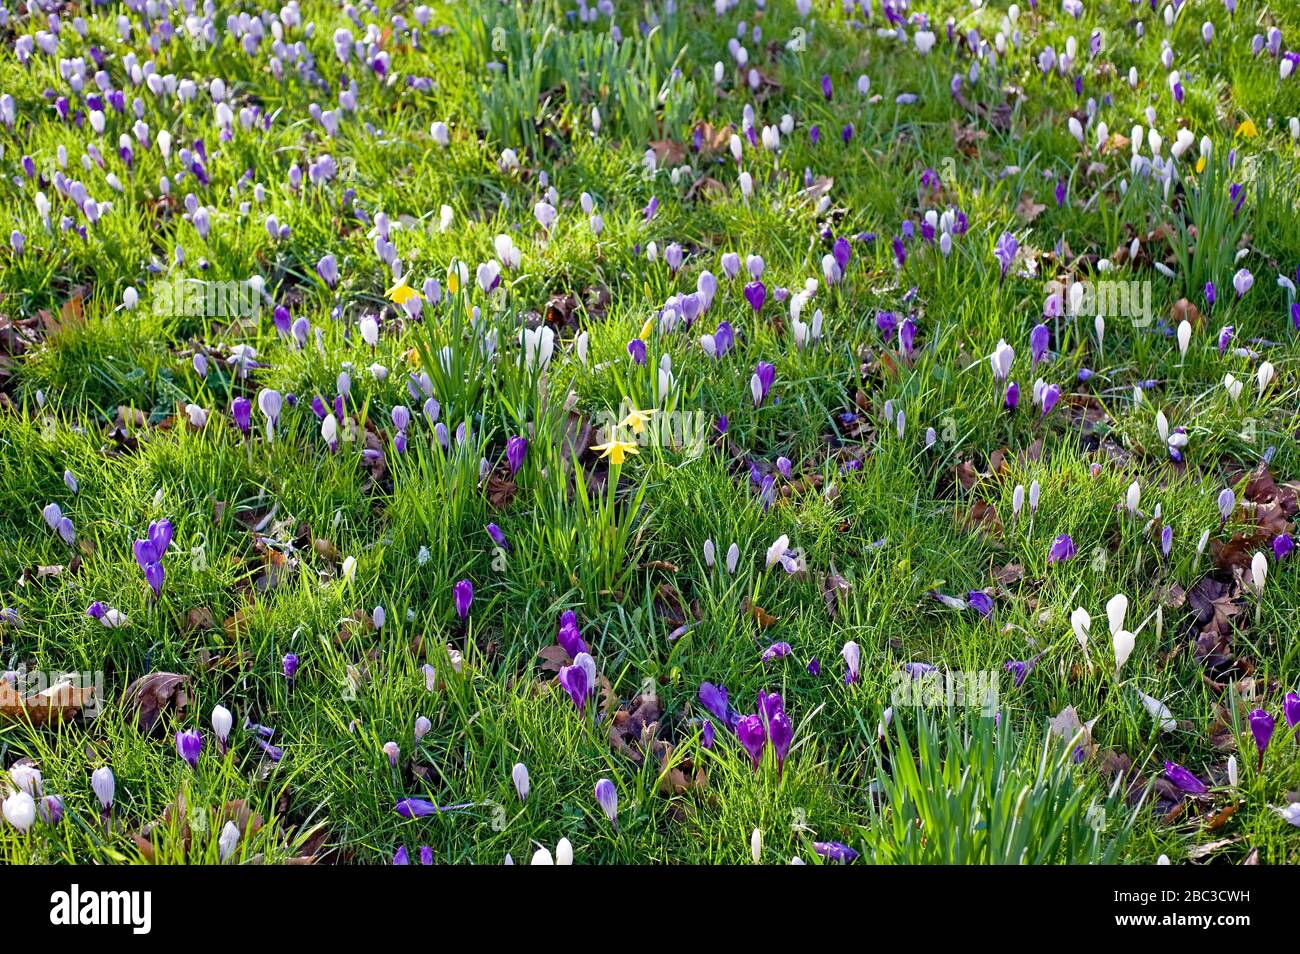 Ein Feld von violetten und weißen Krokussen mit einer Handvoll Narzissen, die aus dem Boden hervorgehen, wenn der Frühling dem Vereinigten Königreich nähert. Stockfoto